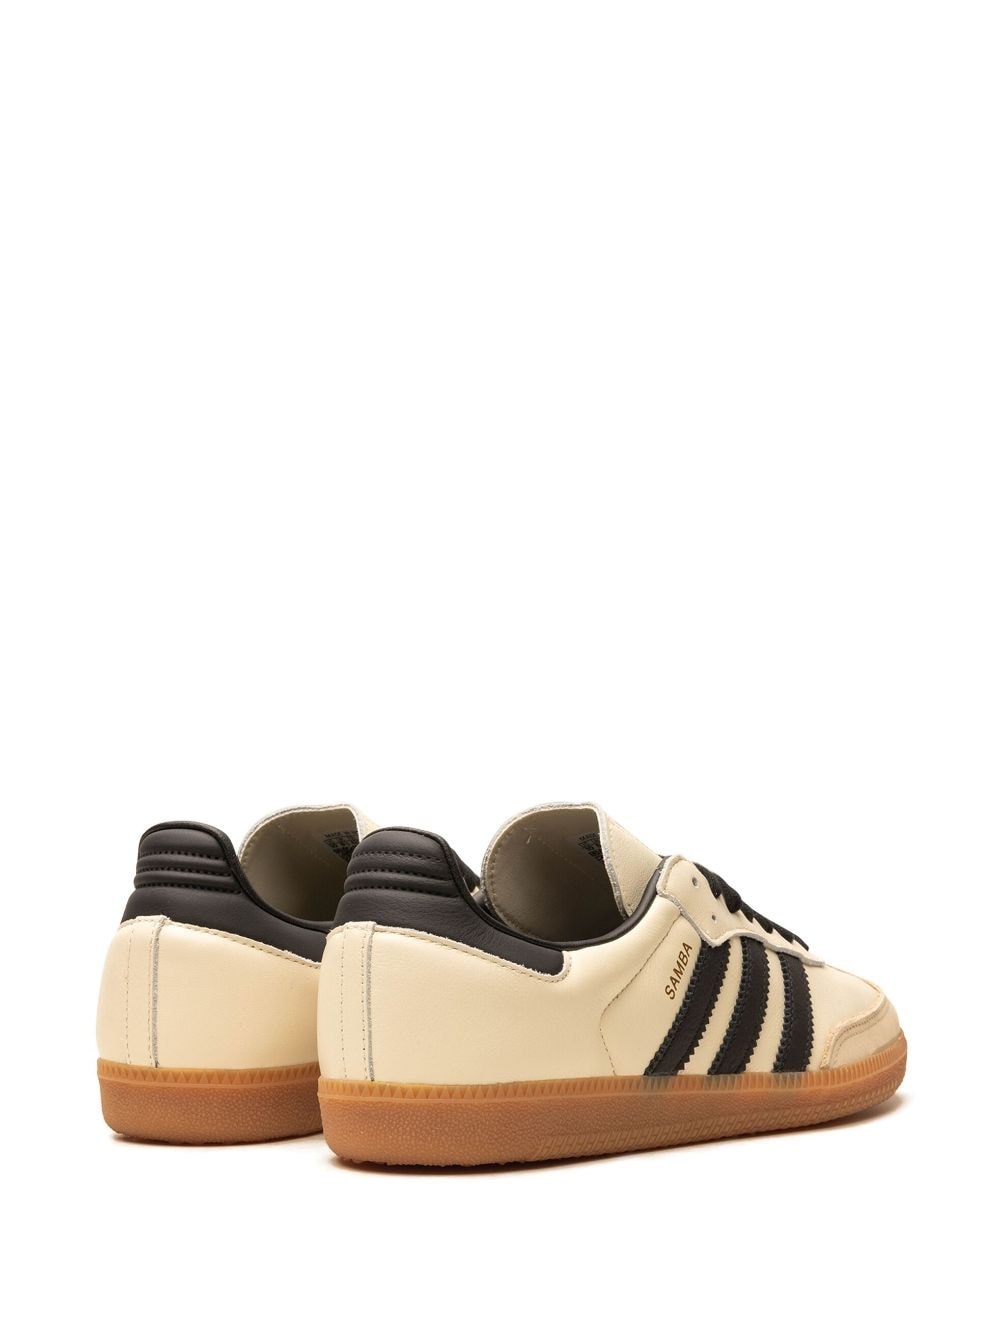 Samba OG "Sand Strata" sneakers - 3